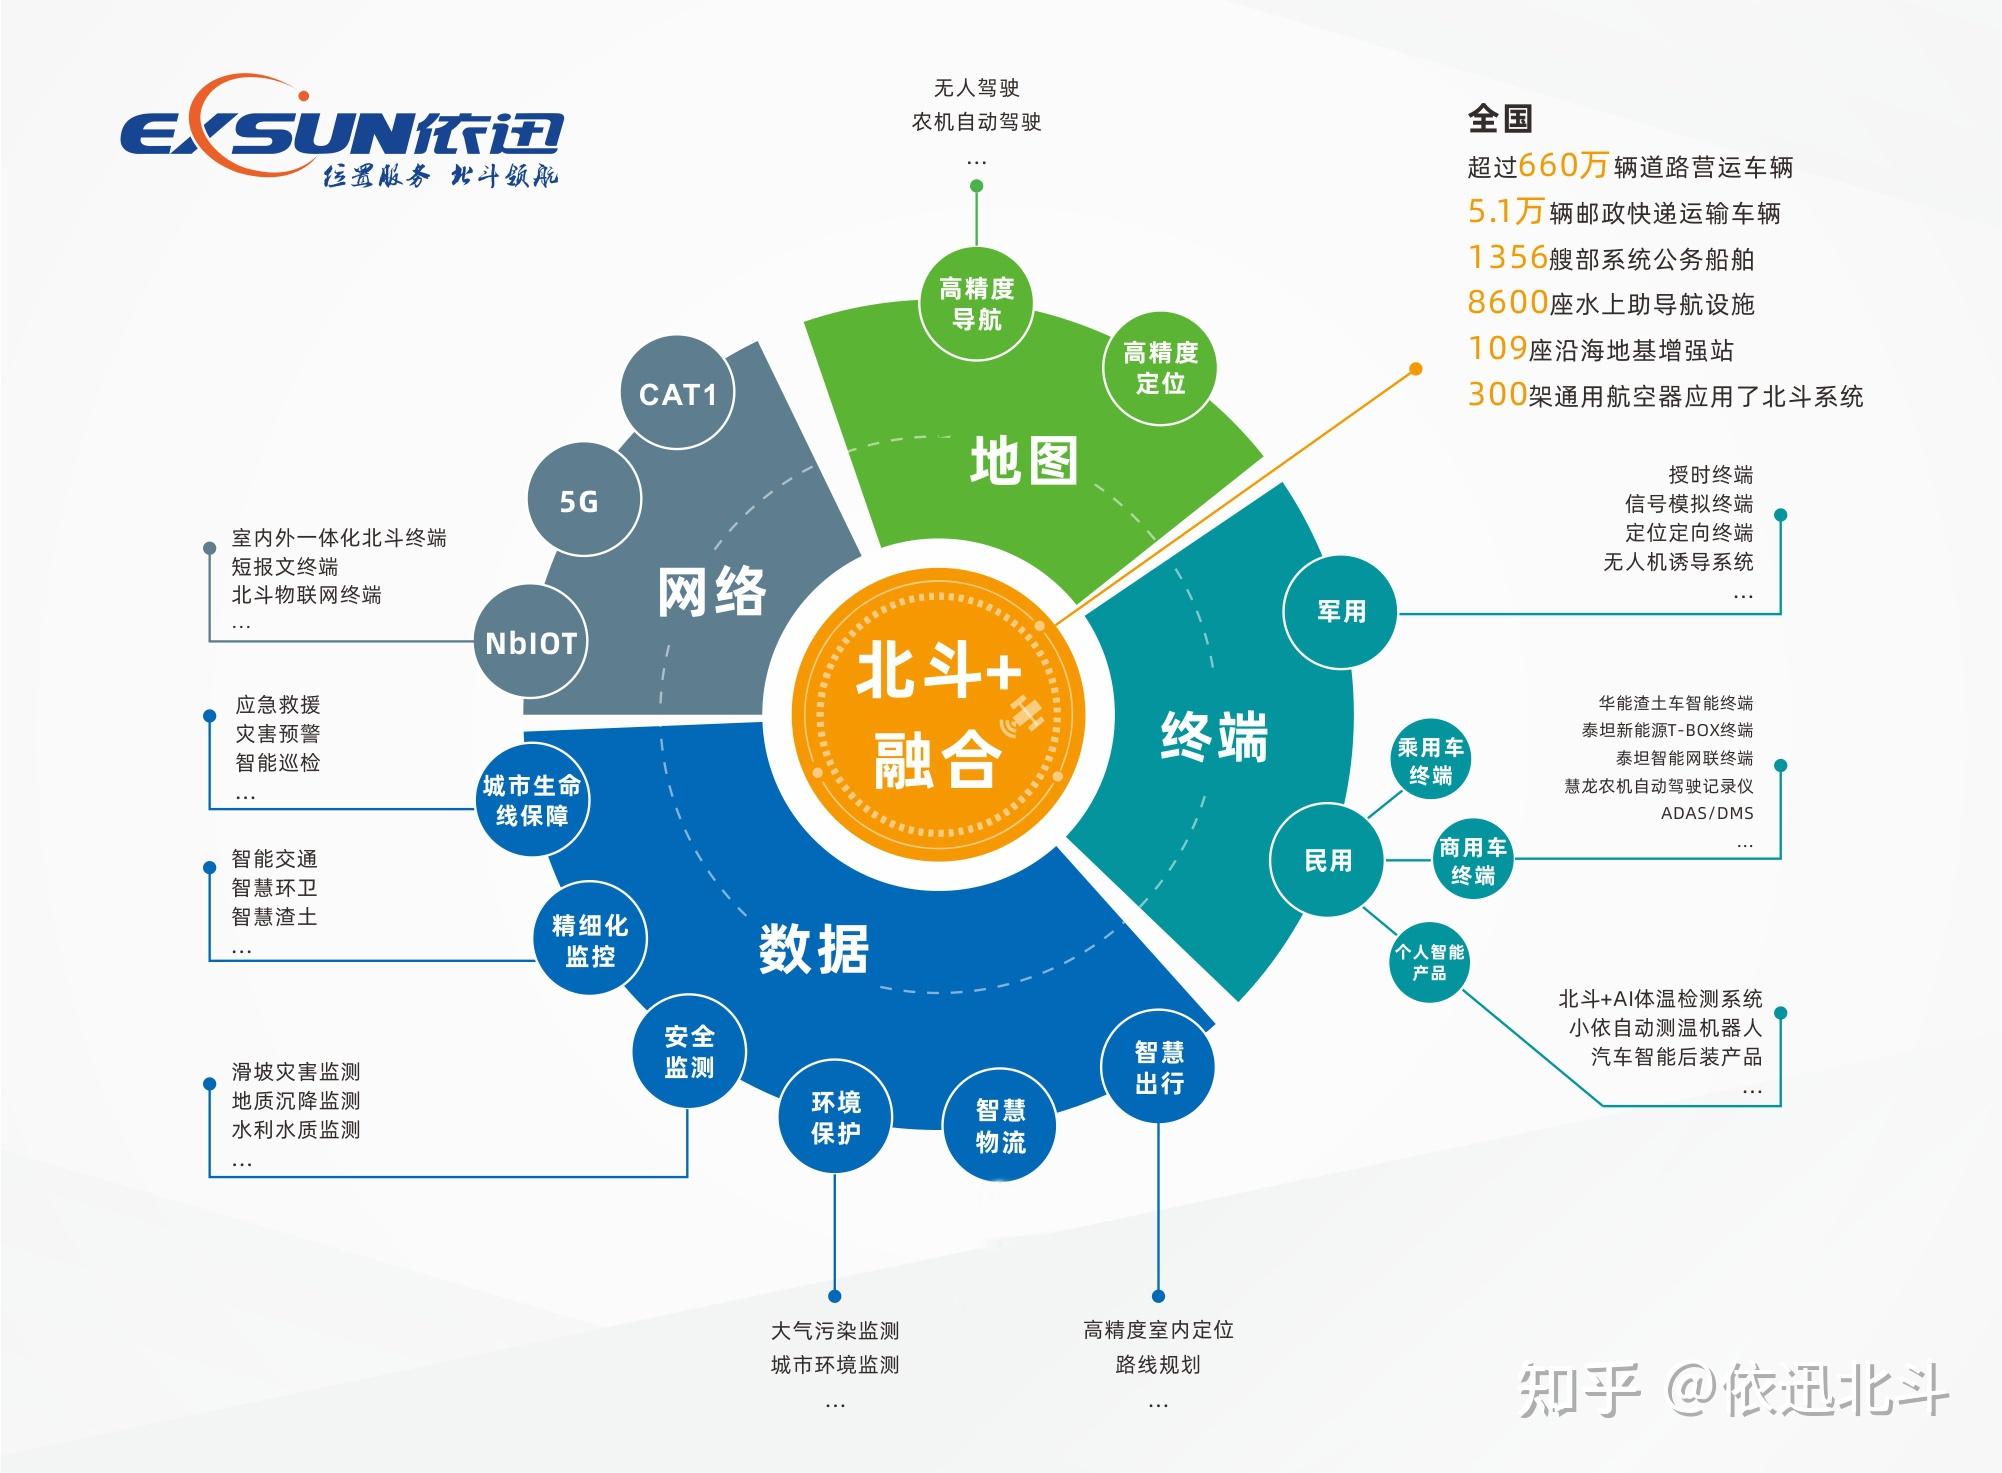 依迅公司作为中国卫星导航与位置服务的产品供应商和运营服务商,依托